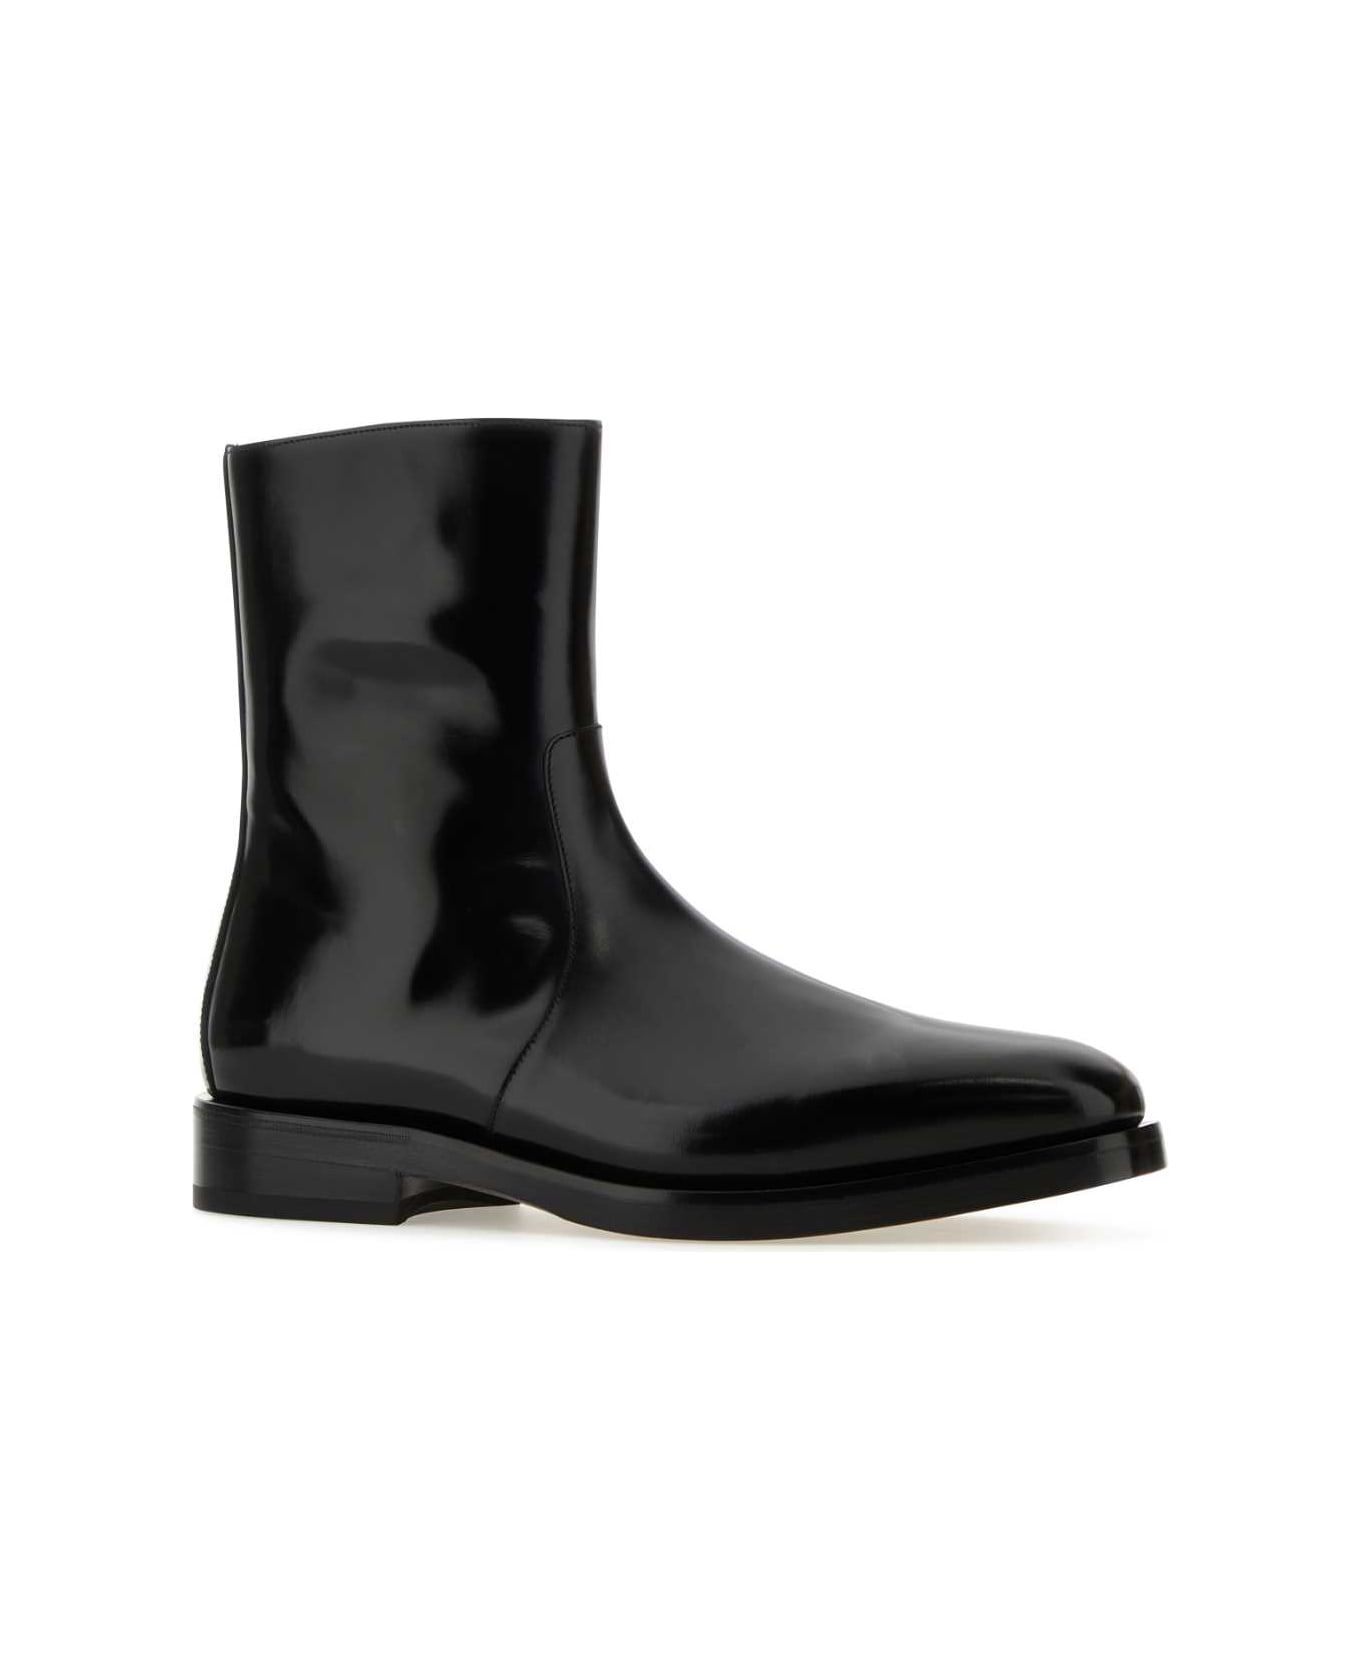 Ferragamo Black Leather Gerald Ankle Boots - NERO